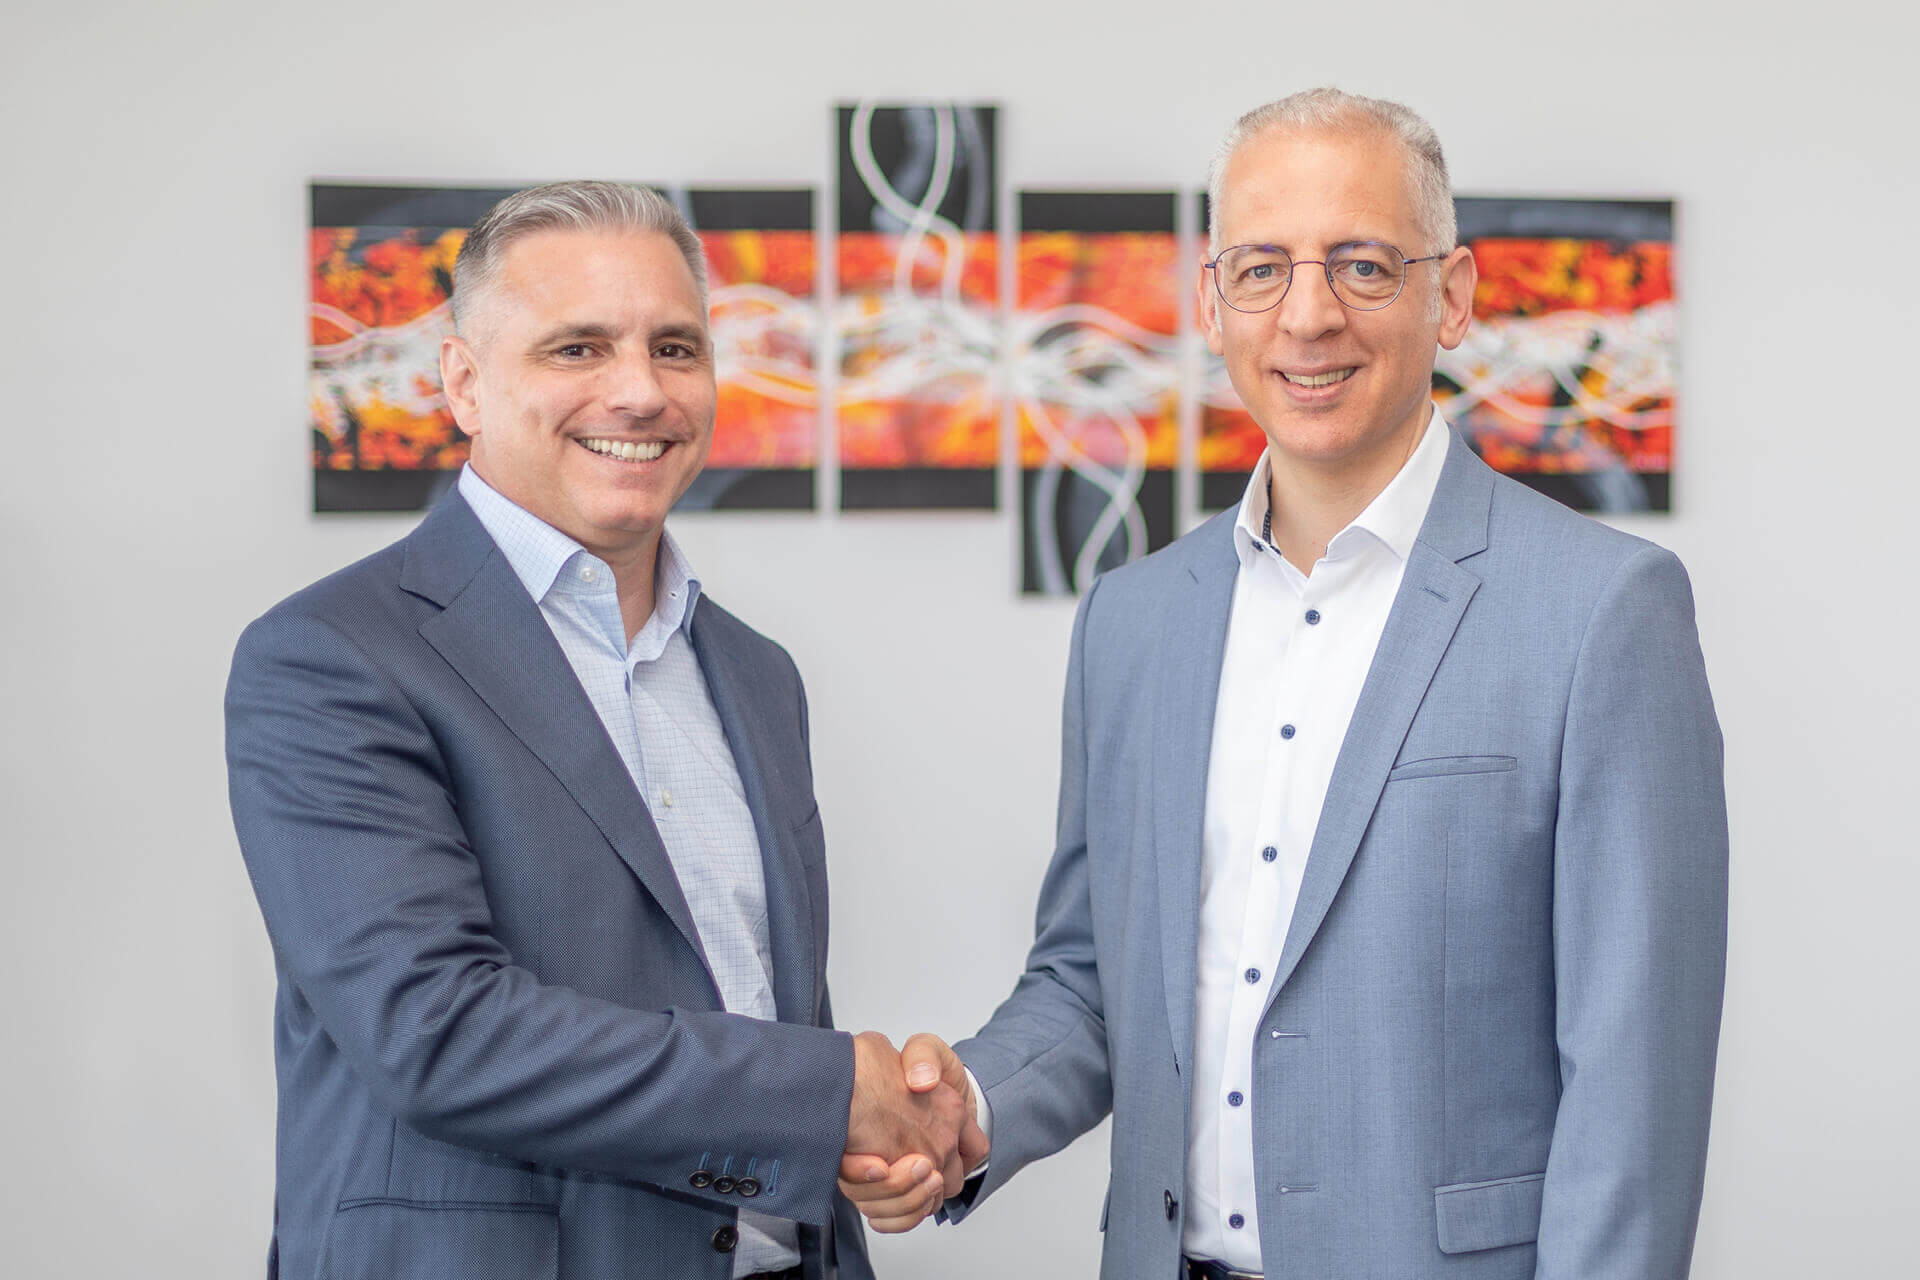 CEO Roland Schreiner (right) welcomes Brian Zumbolo as the new President of Schreiner Group LP.